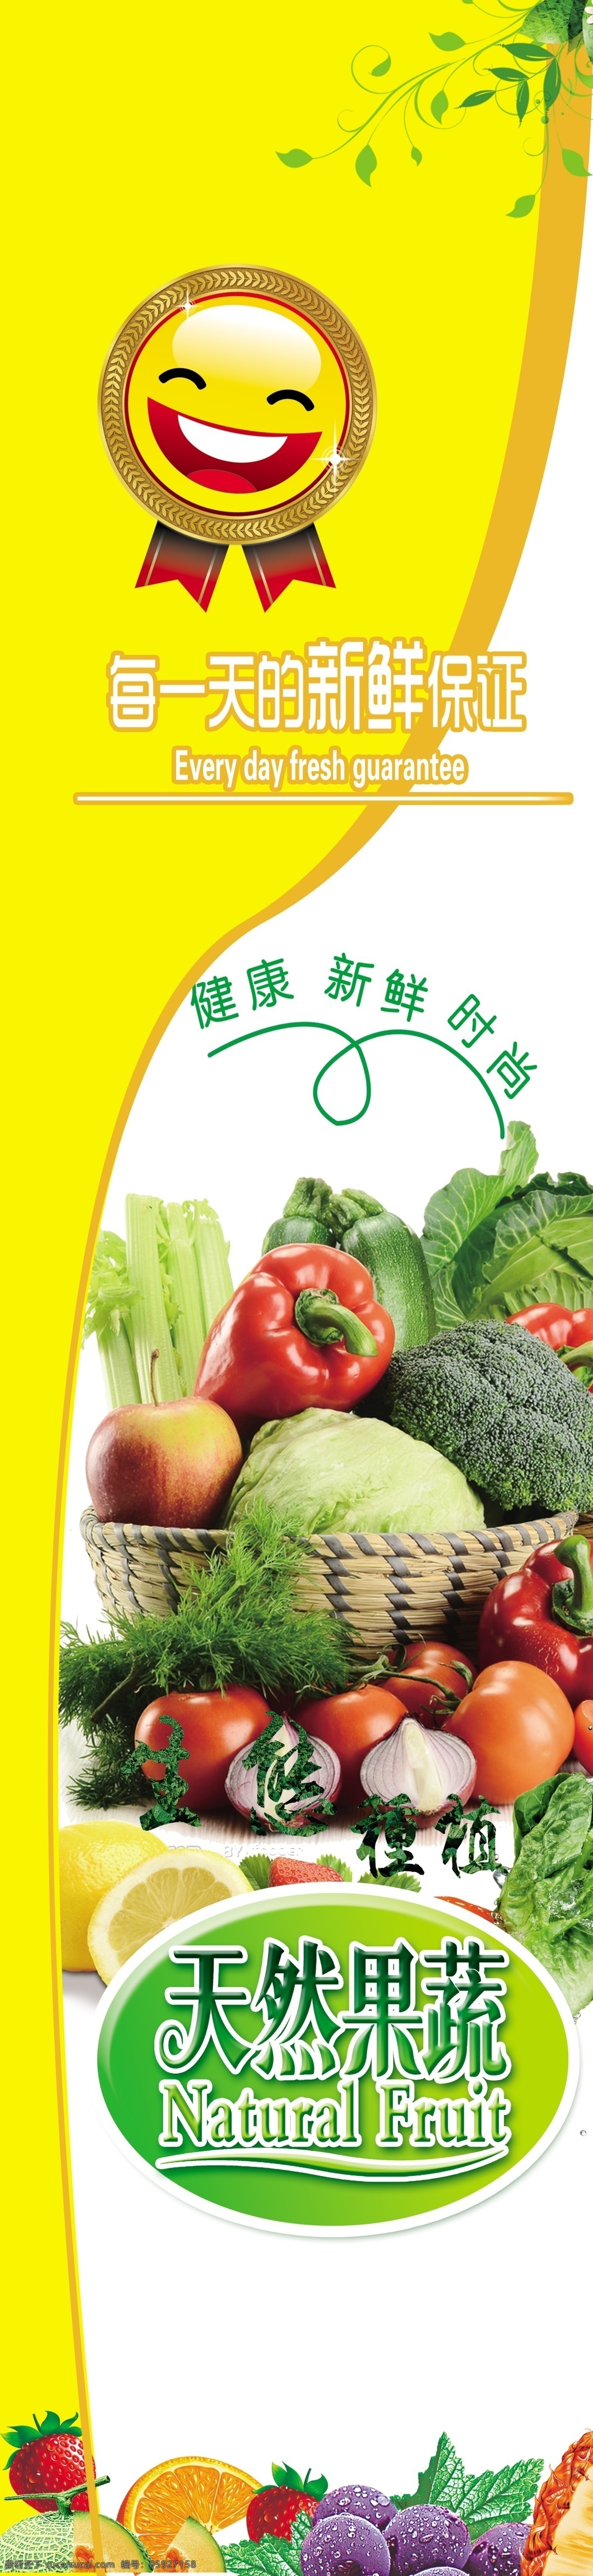 超市展板 果蔬 水果 蔬菜 超市果蔬 黄色展板